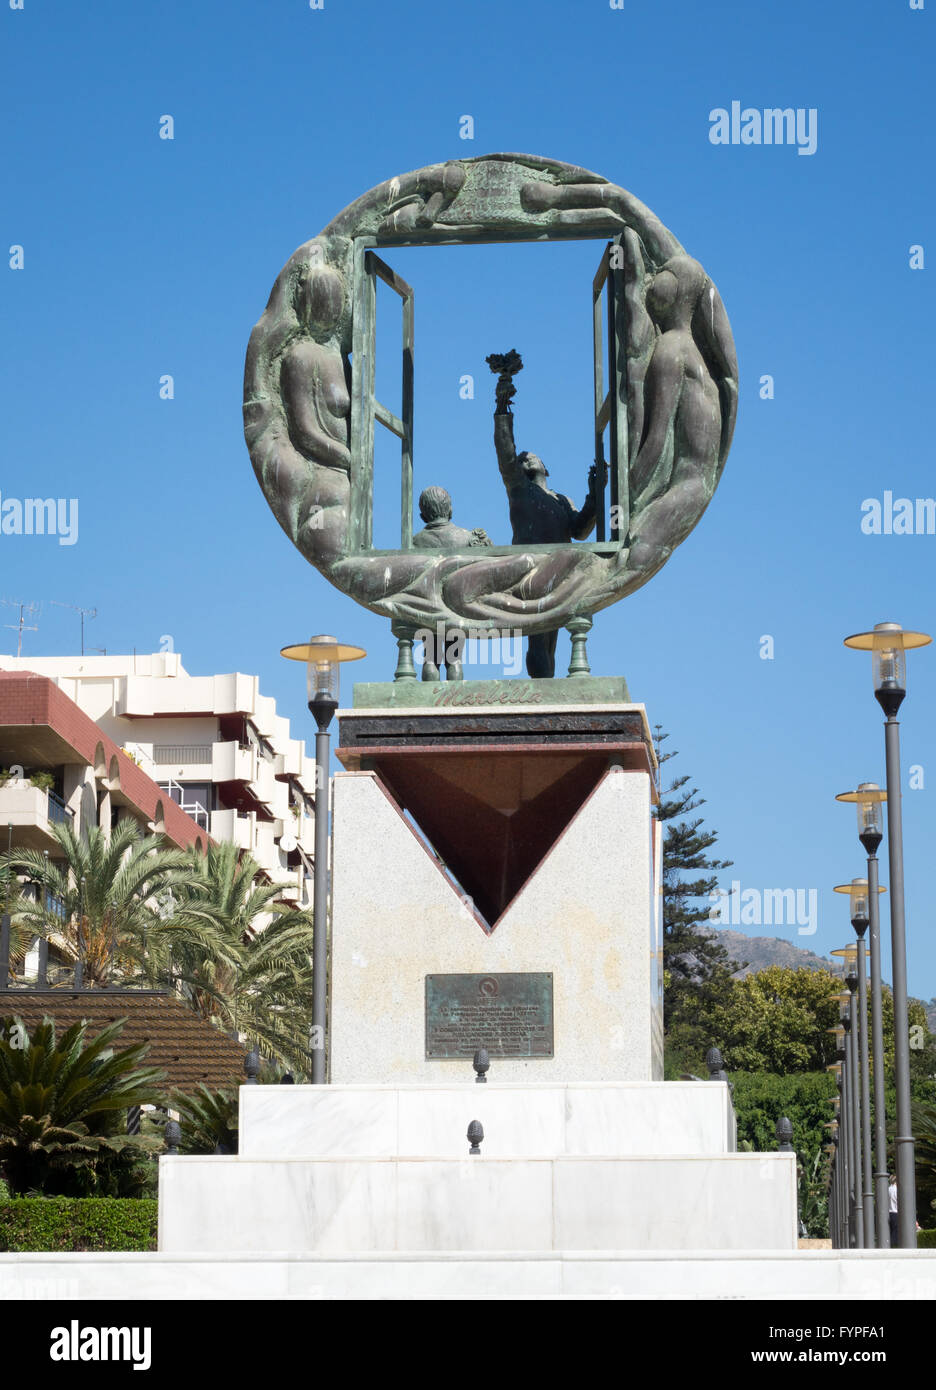 Bienvenido escultura en Marbella Foto de stock